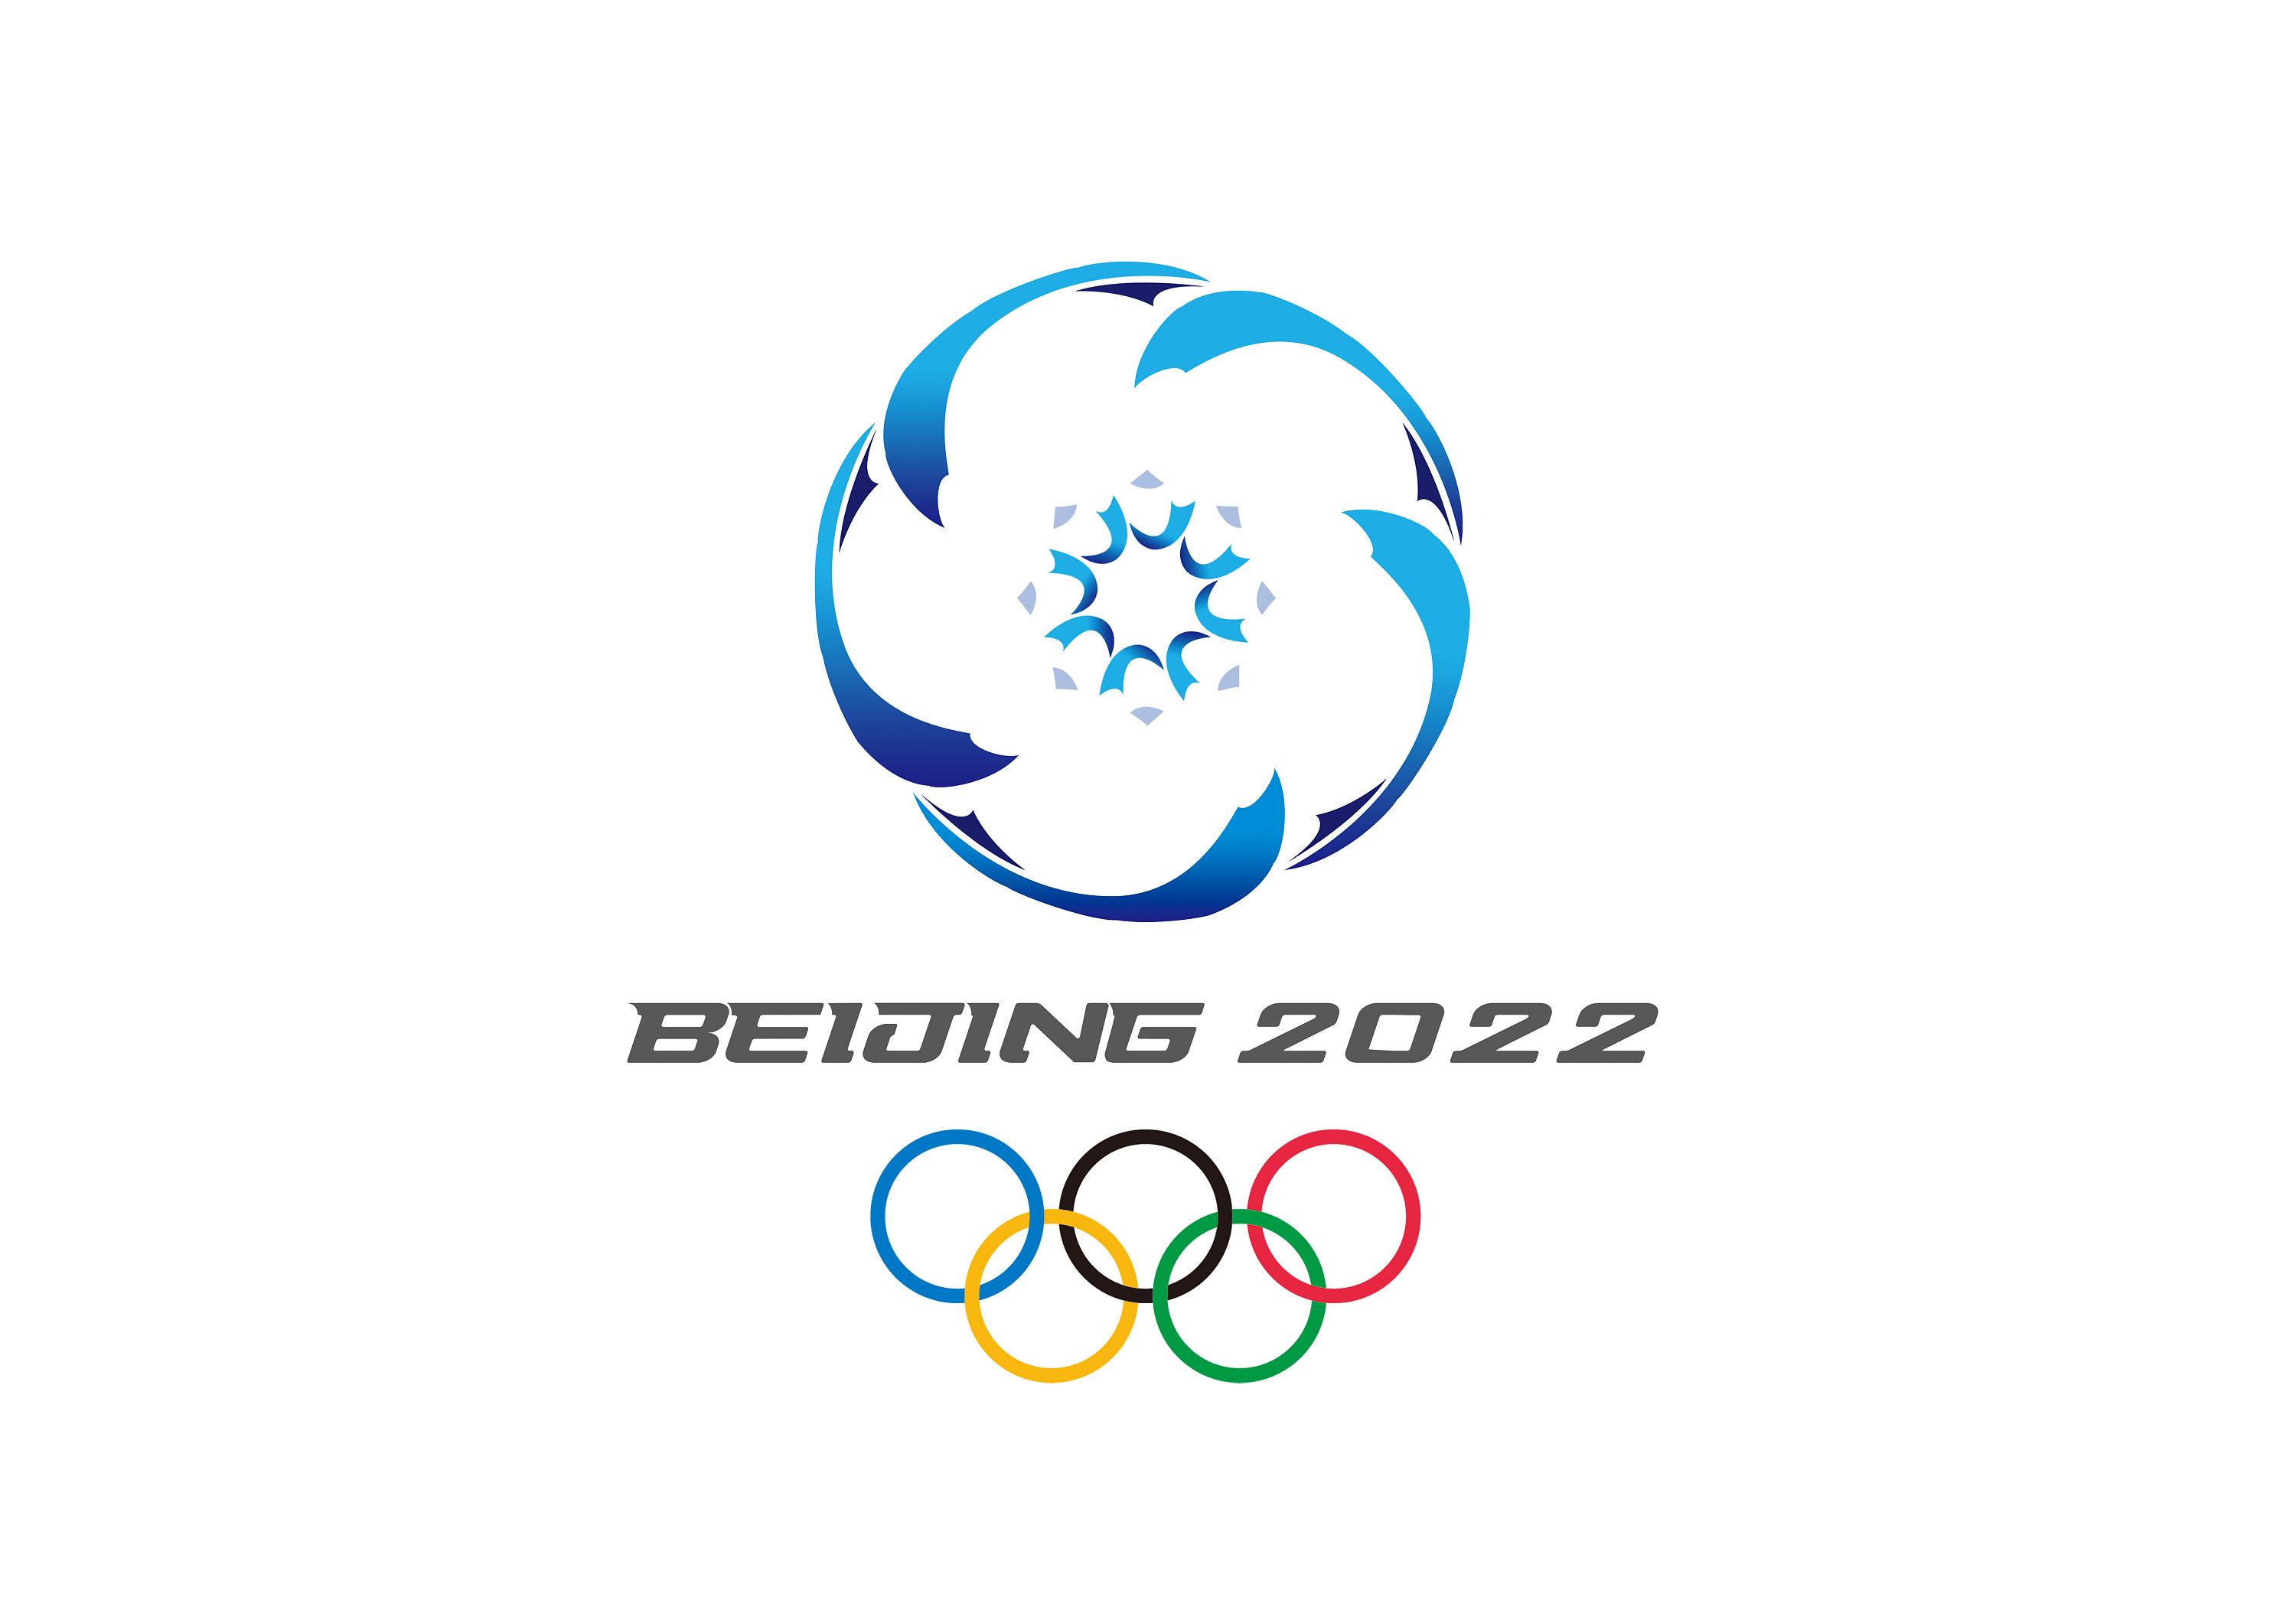 历时4年,为2022年冬奥会而打造的!中国第一支滑雪救援团队